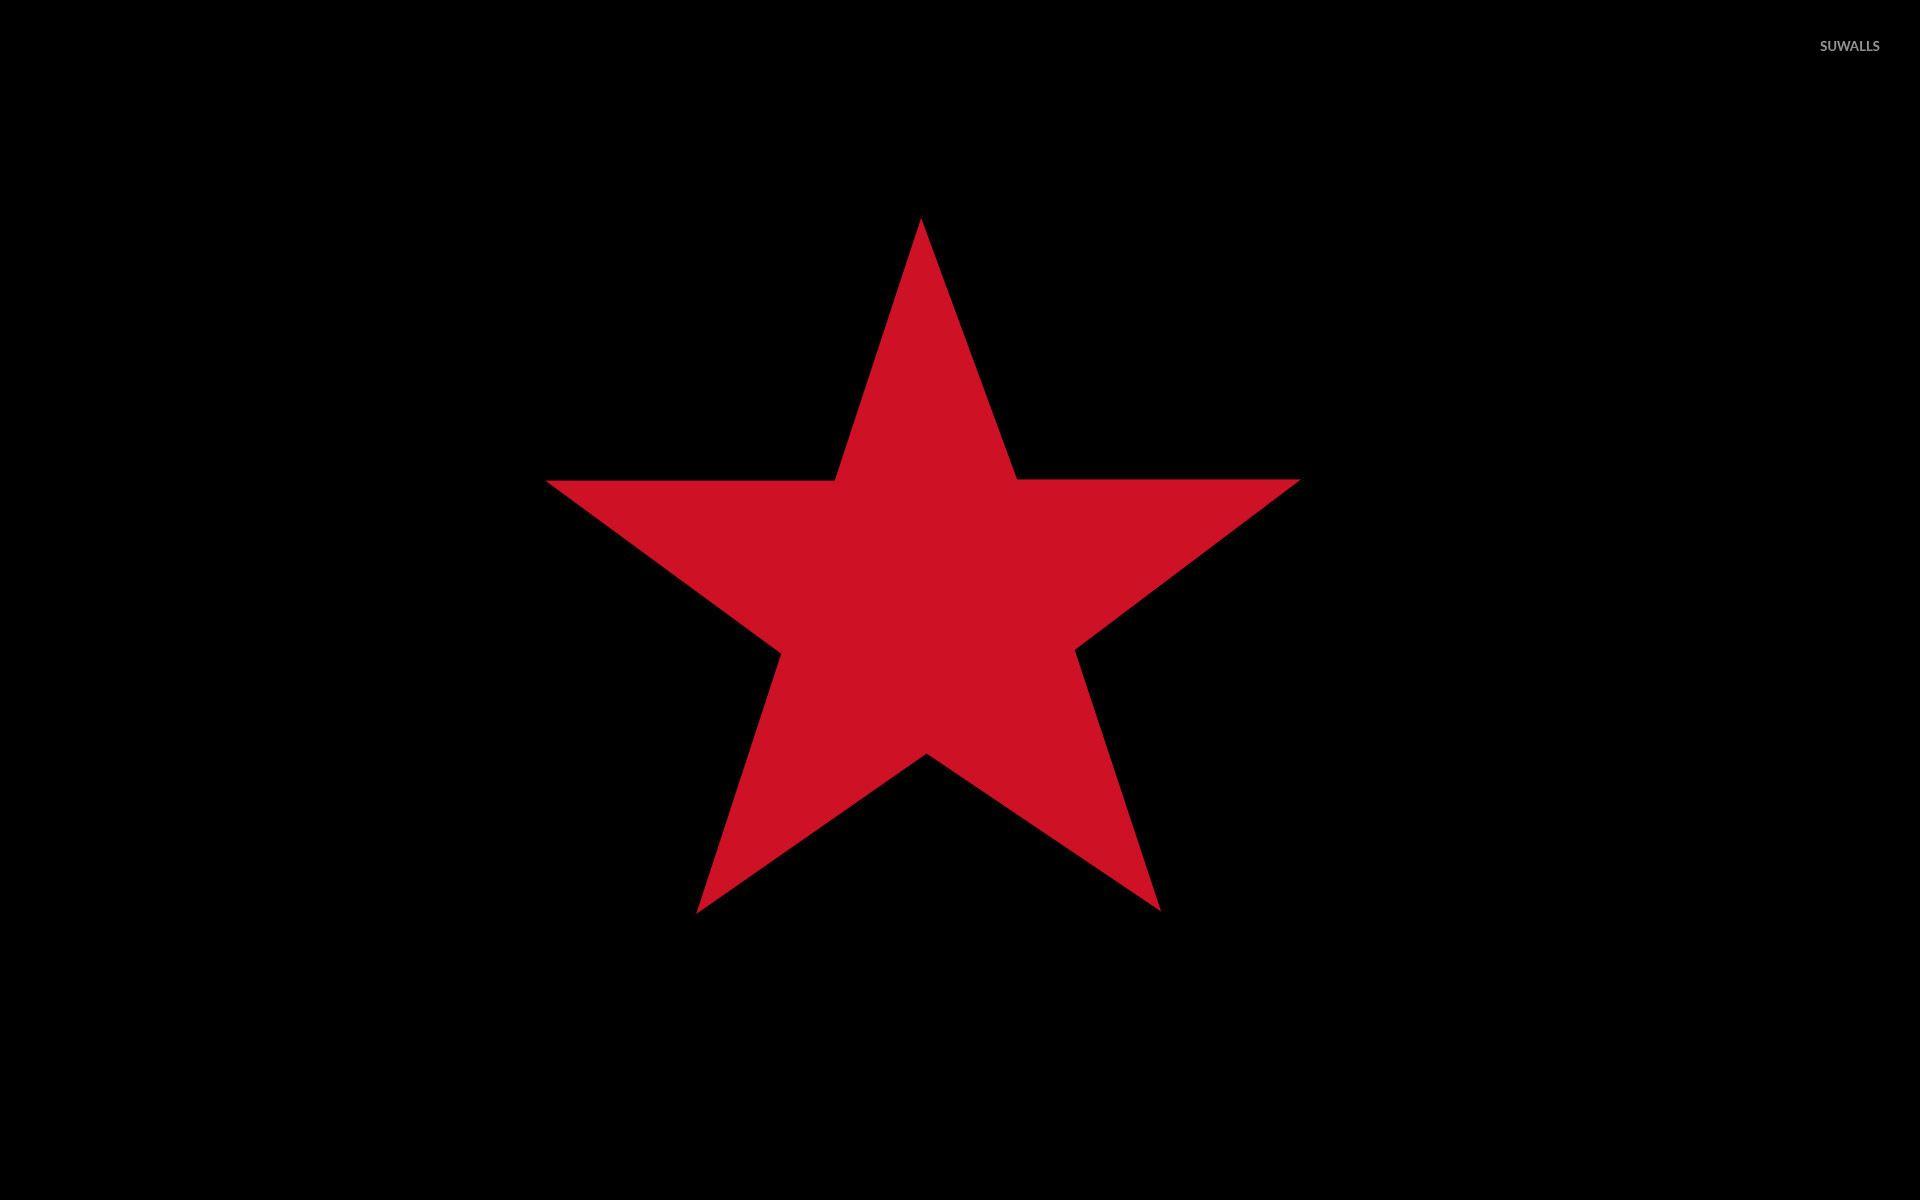 Soviet Red Star Wallpaper